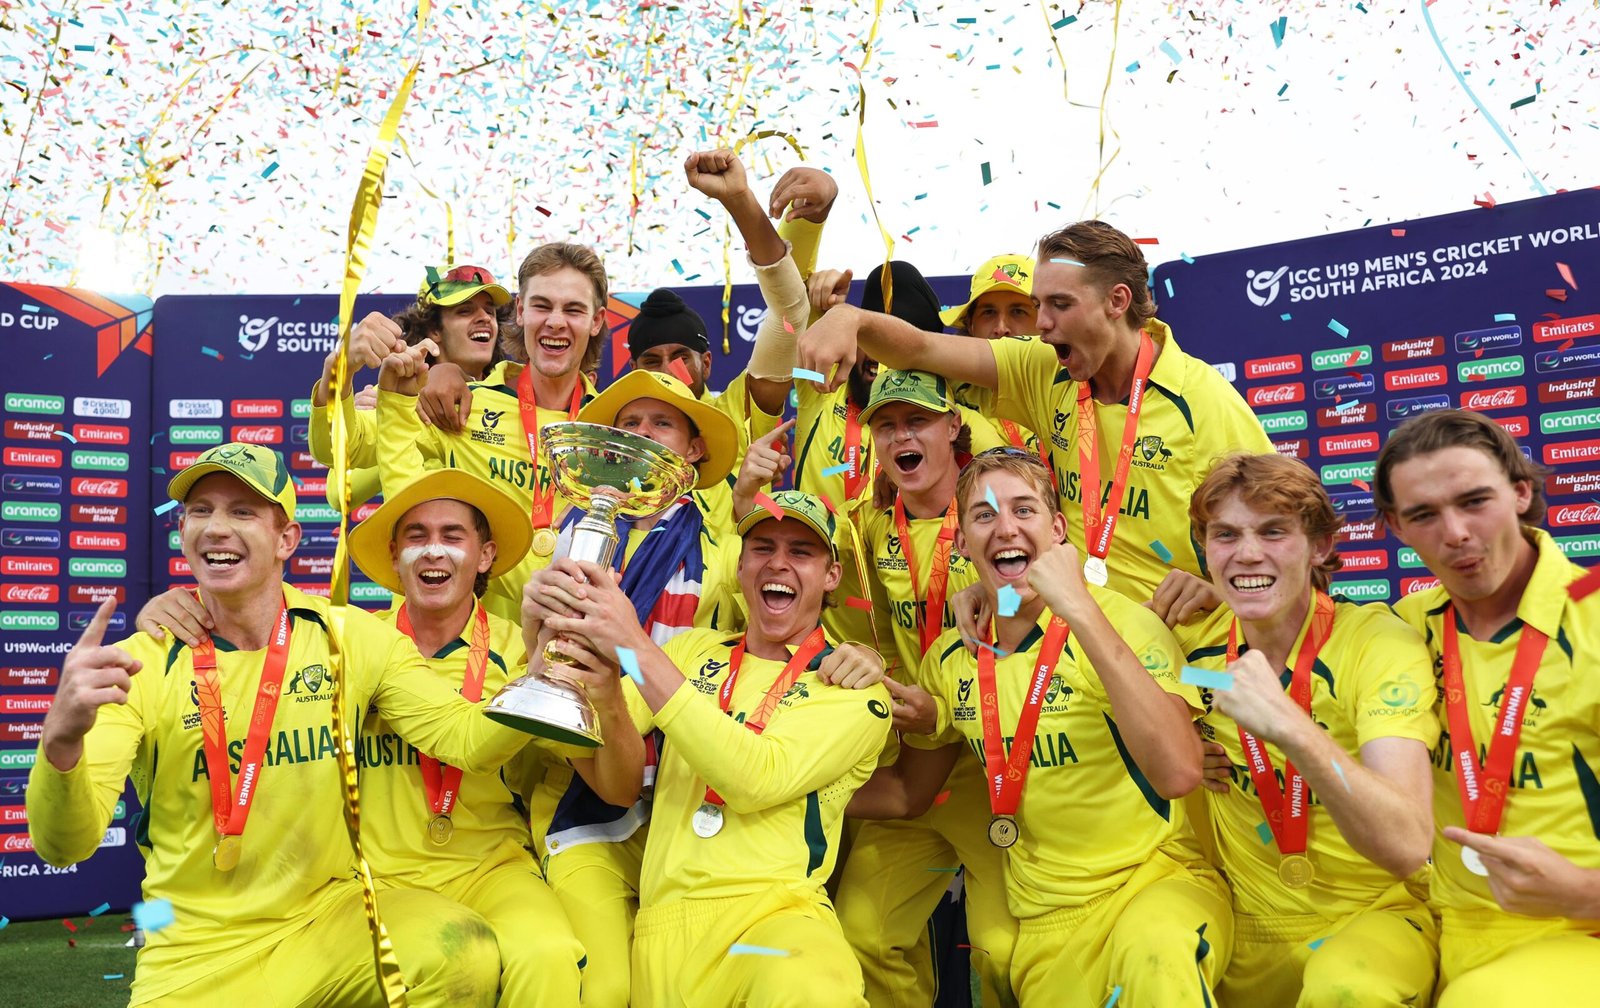 ICC Under-19 Cricket World Cup final 2024, Aus Won by 79 Runs